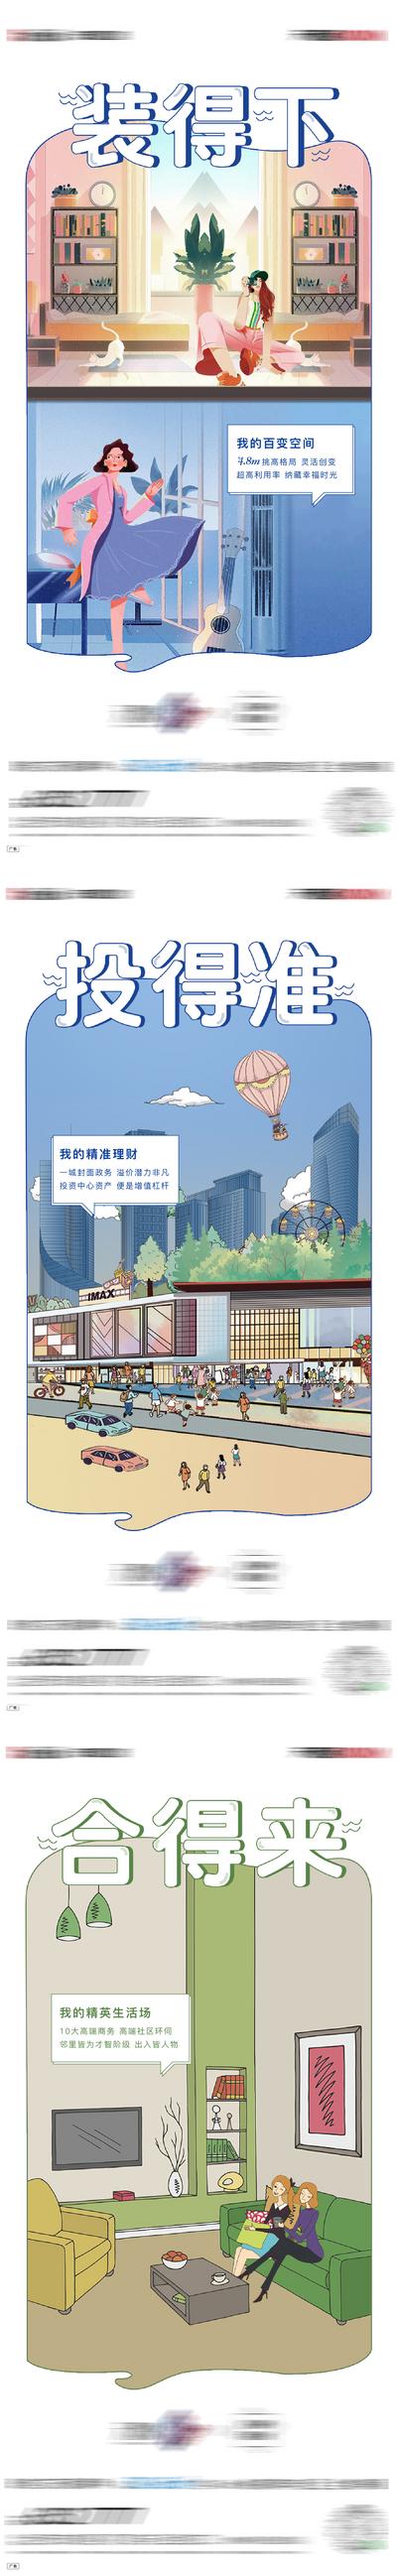 南门网 公寓插画城市商业系列单图微信海报